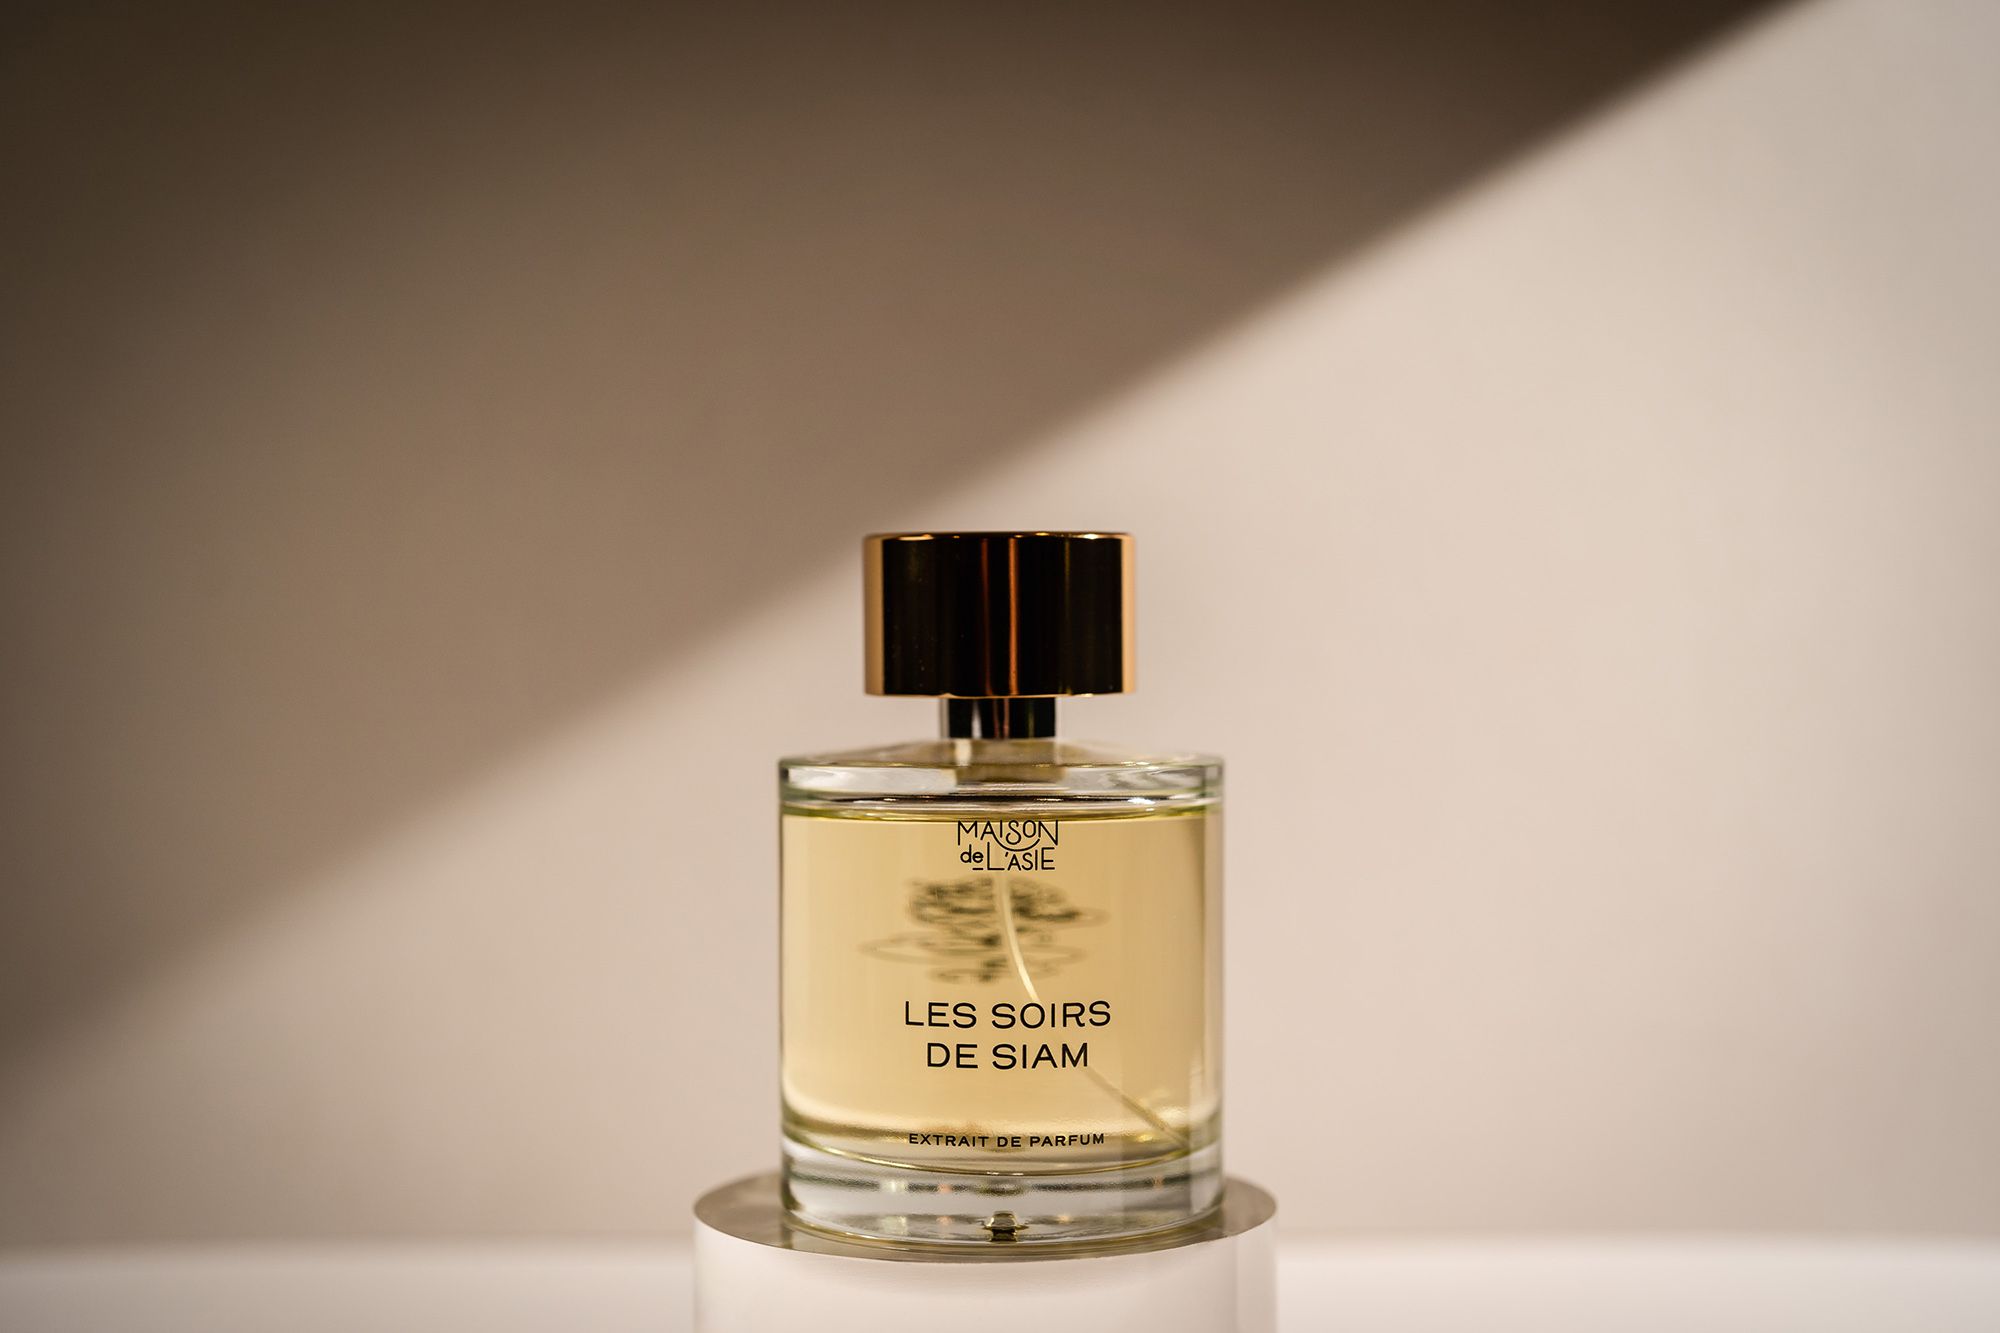 Les Soirs de Siam Maison de L'Asie perfume - a new fragrance for women ...